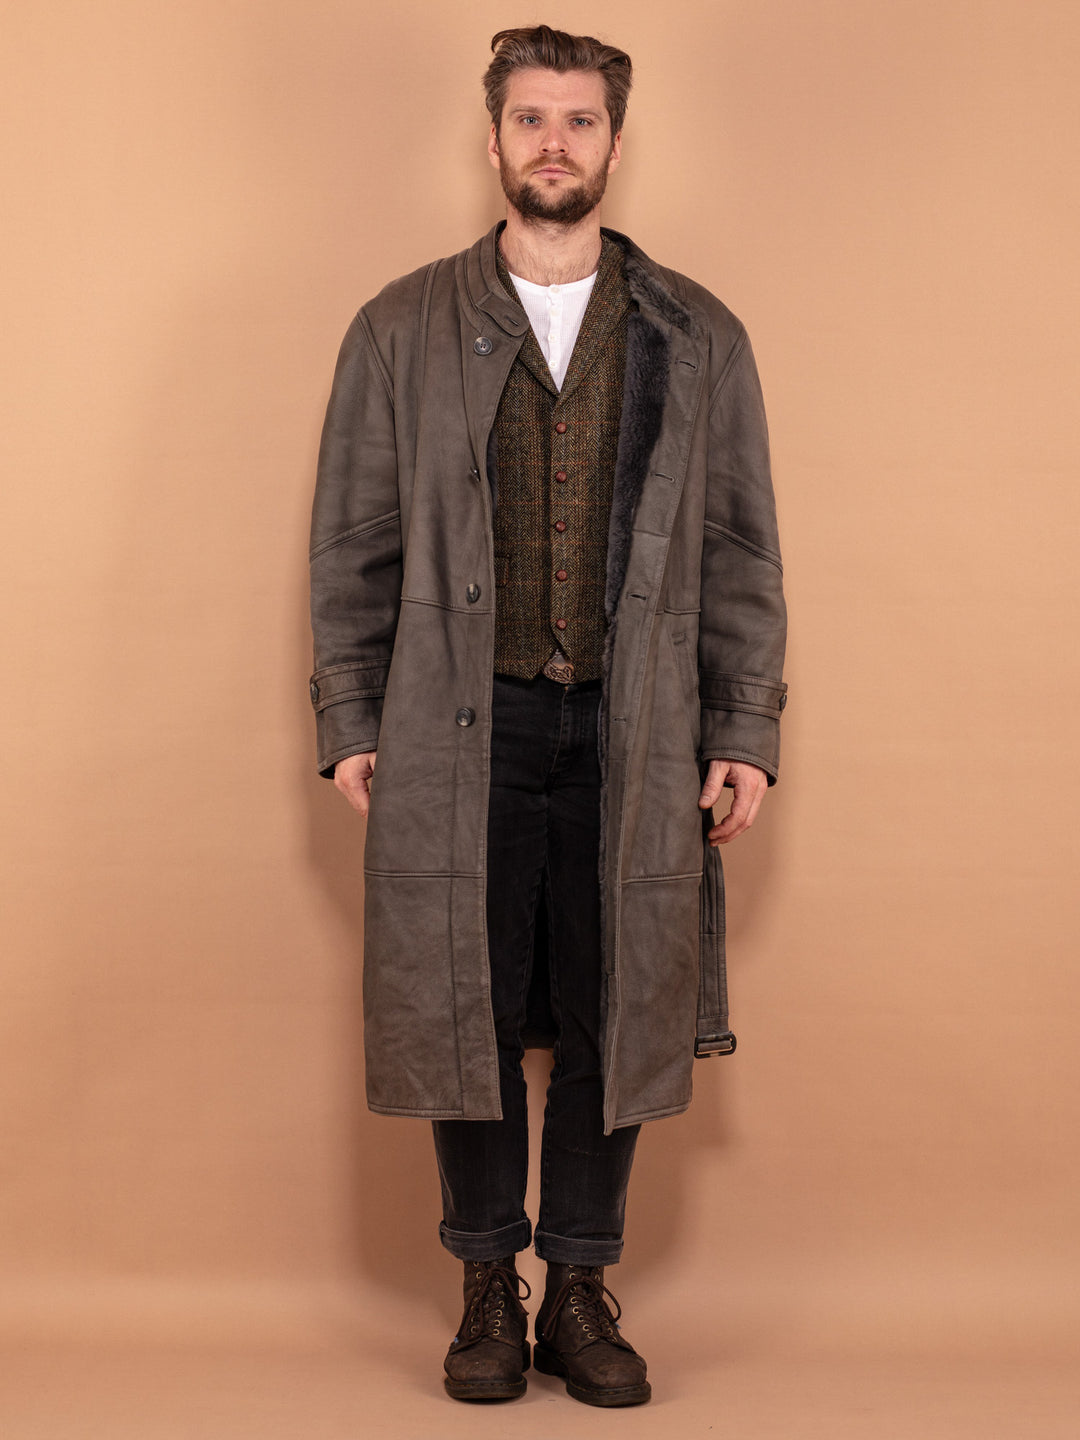 Men Longline Sheepskin Coat 70s, Size L Large, Vintage Winter Coat, Gray Leather Coat, Belted Midi Coat, Shearling Outerwear, Menswear